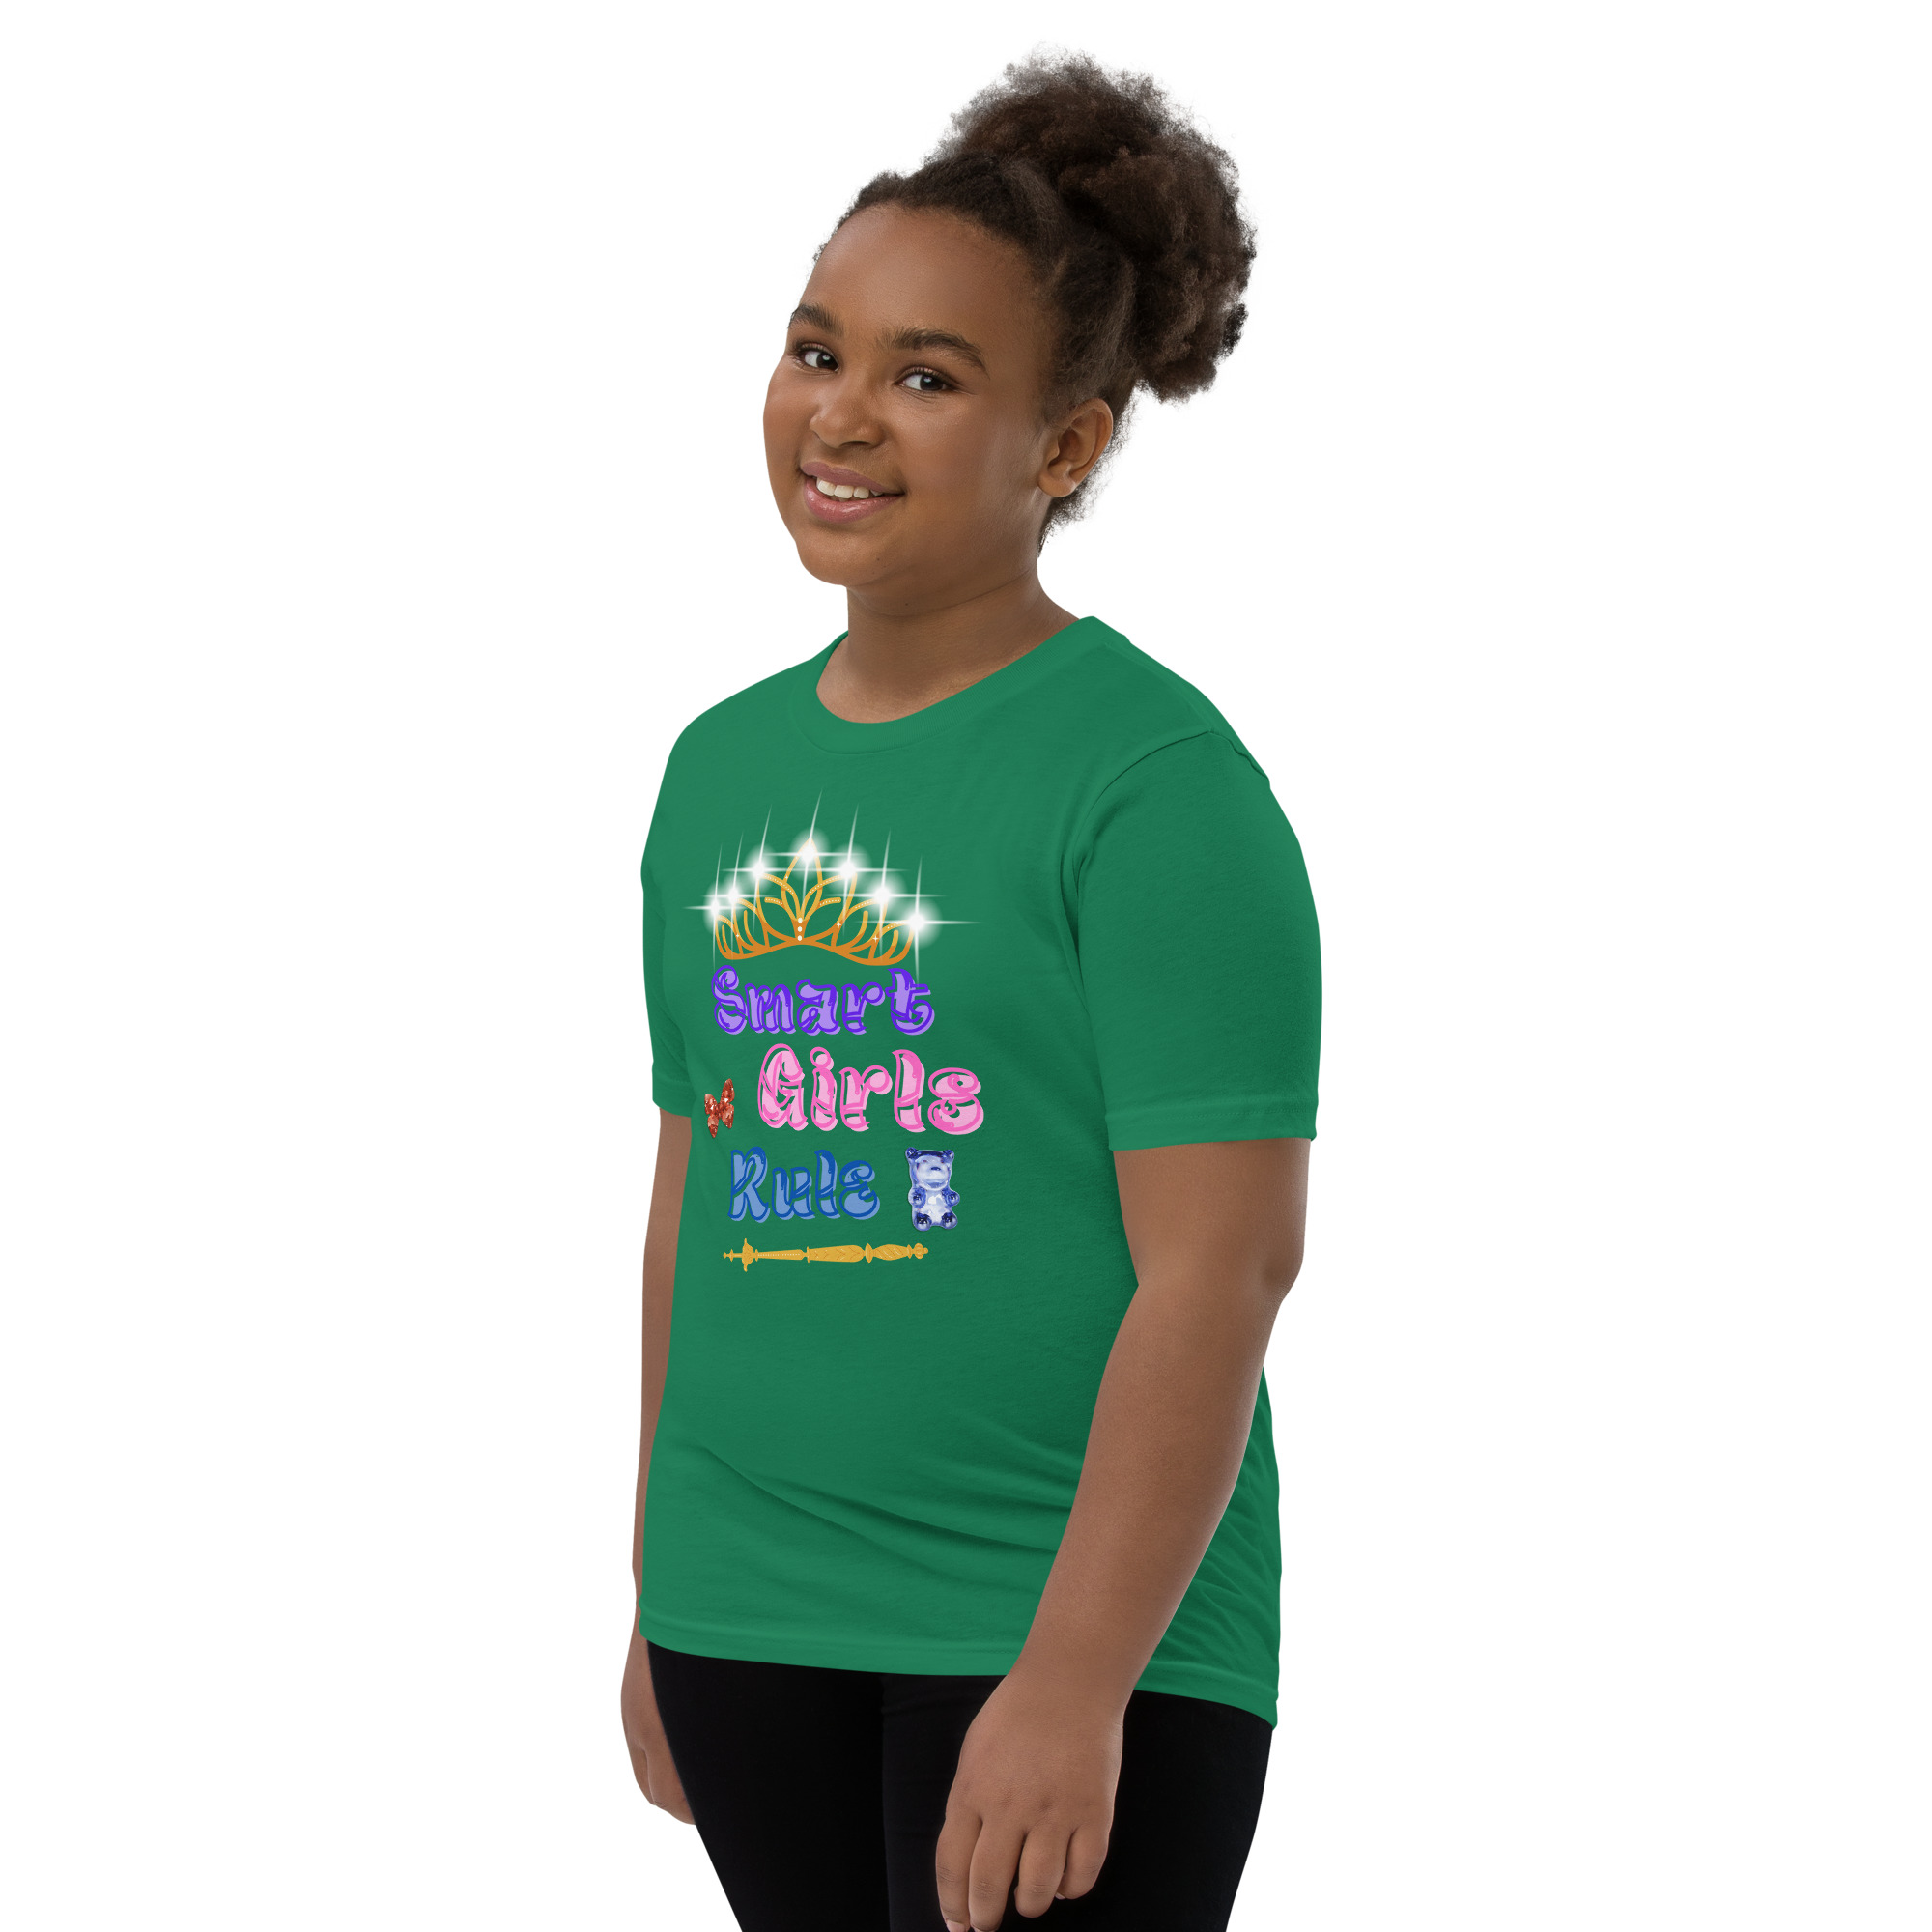 Smart Girls Rule Teen T-Shirt – aujbooksllc